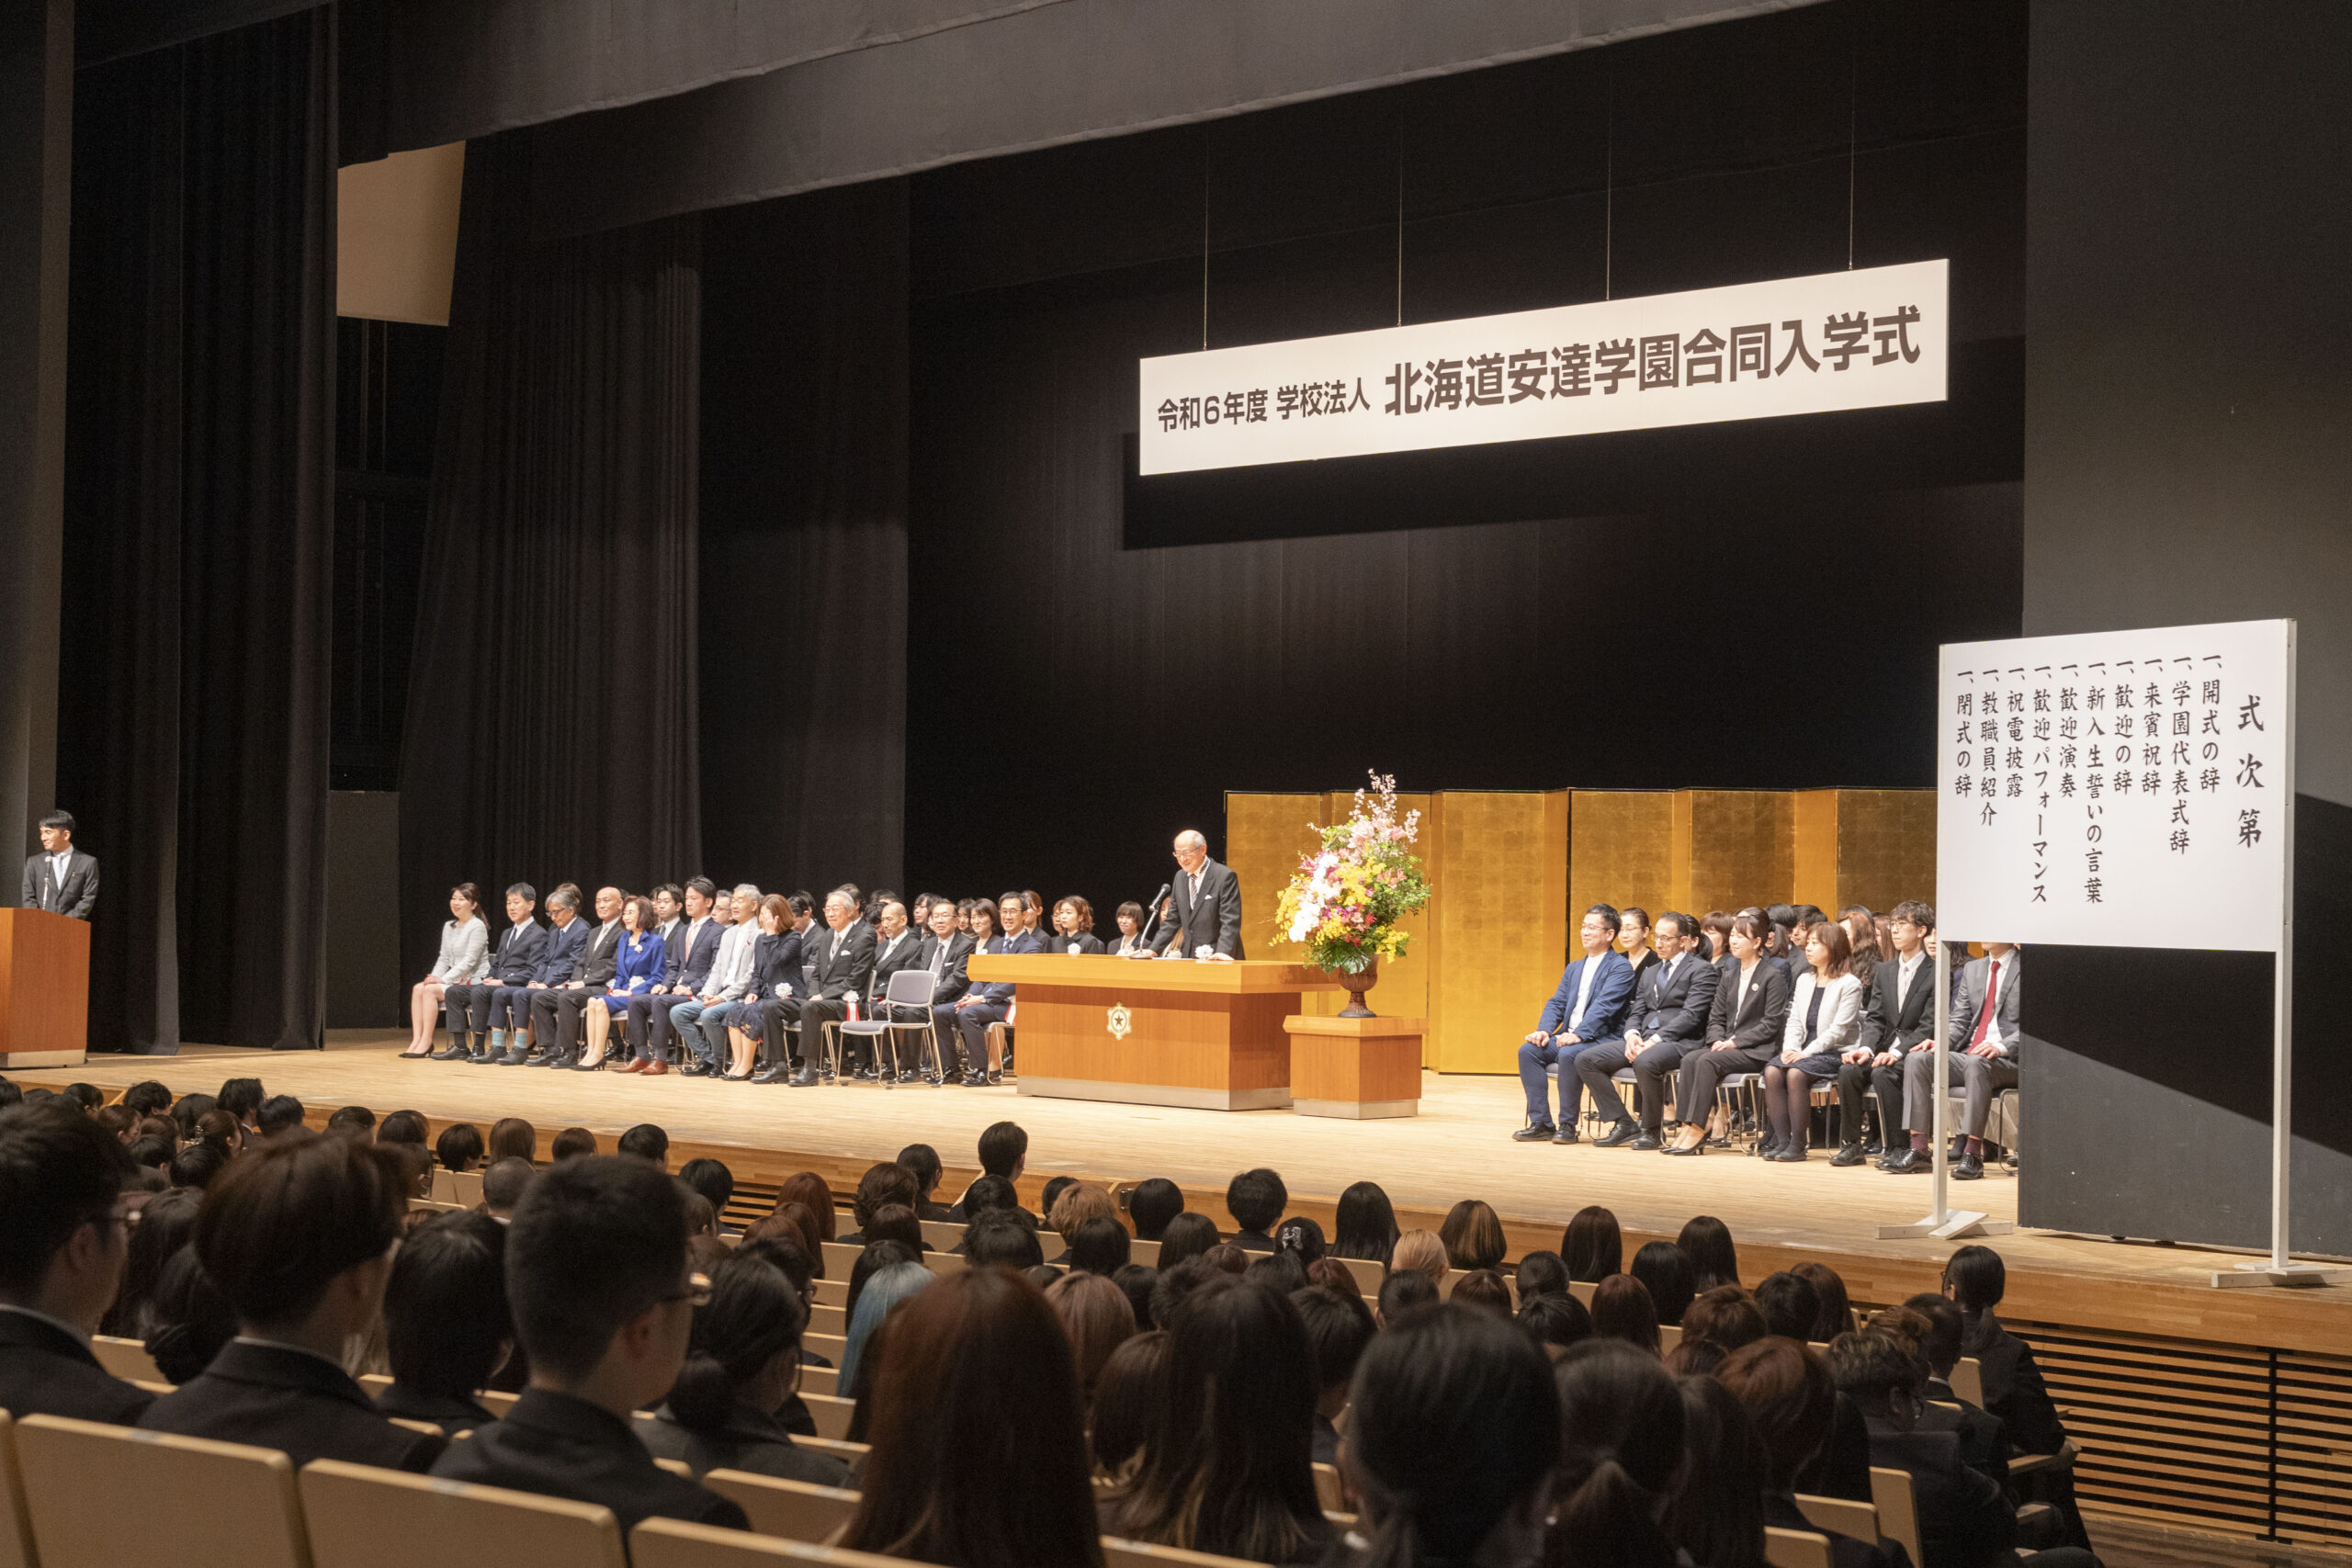 令和6年度 北海道安達学園 5校合同入学式 が行われました。